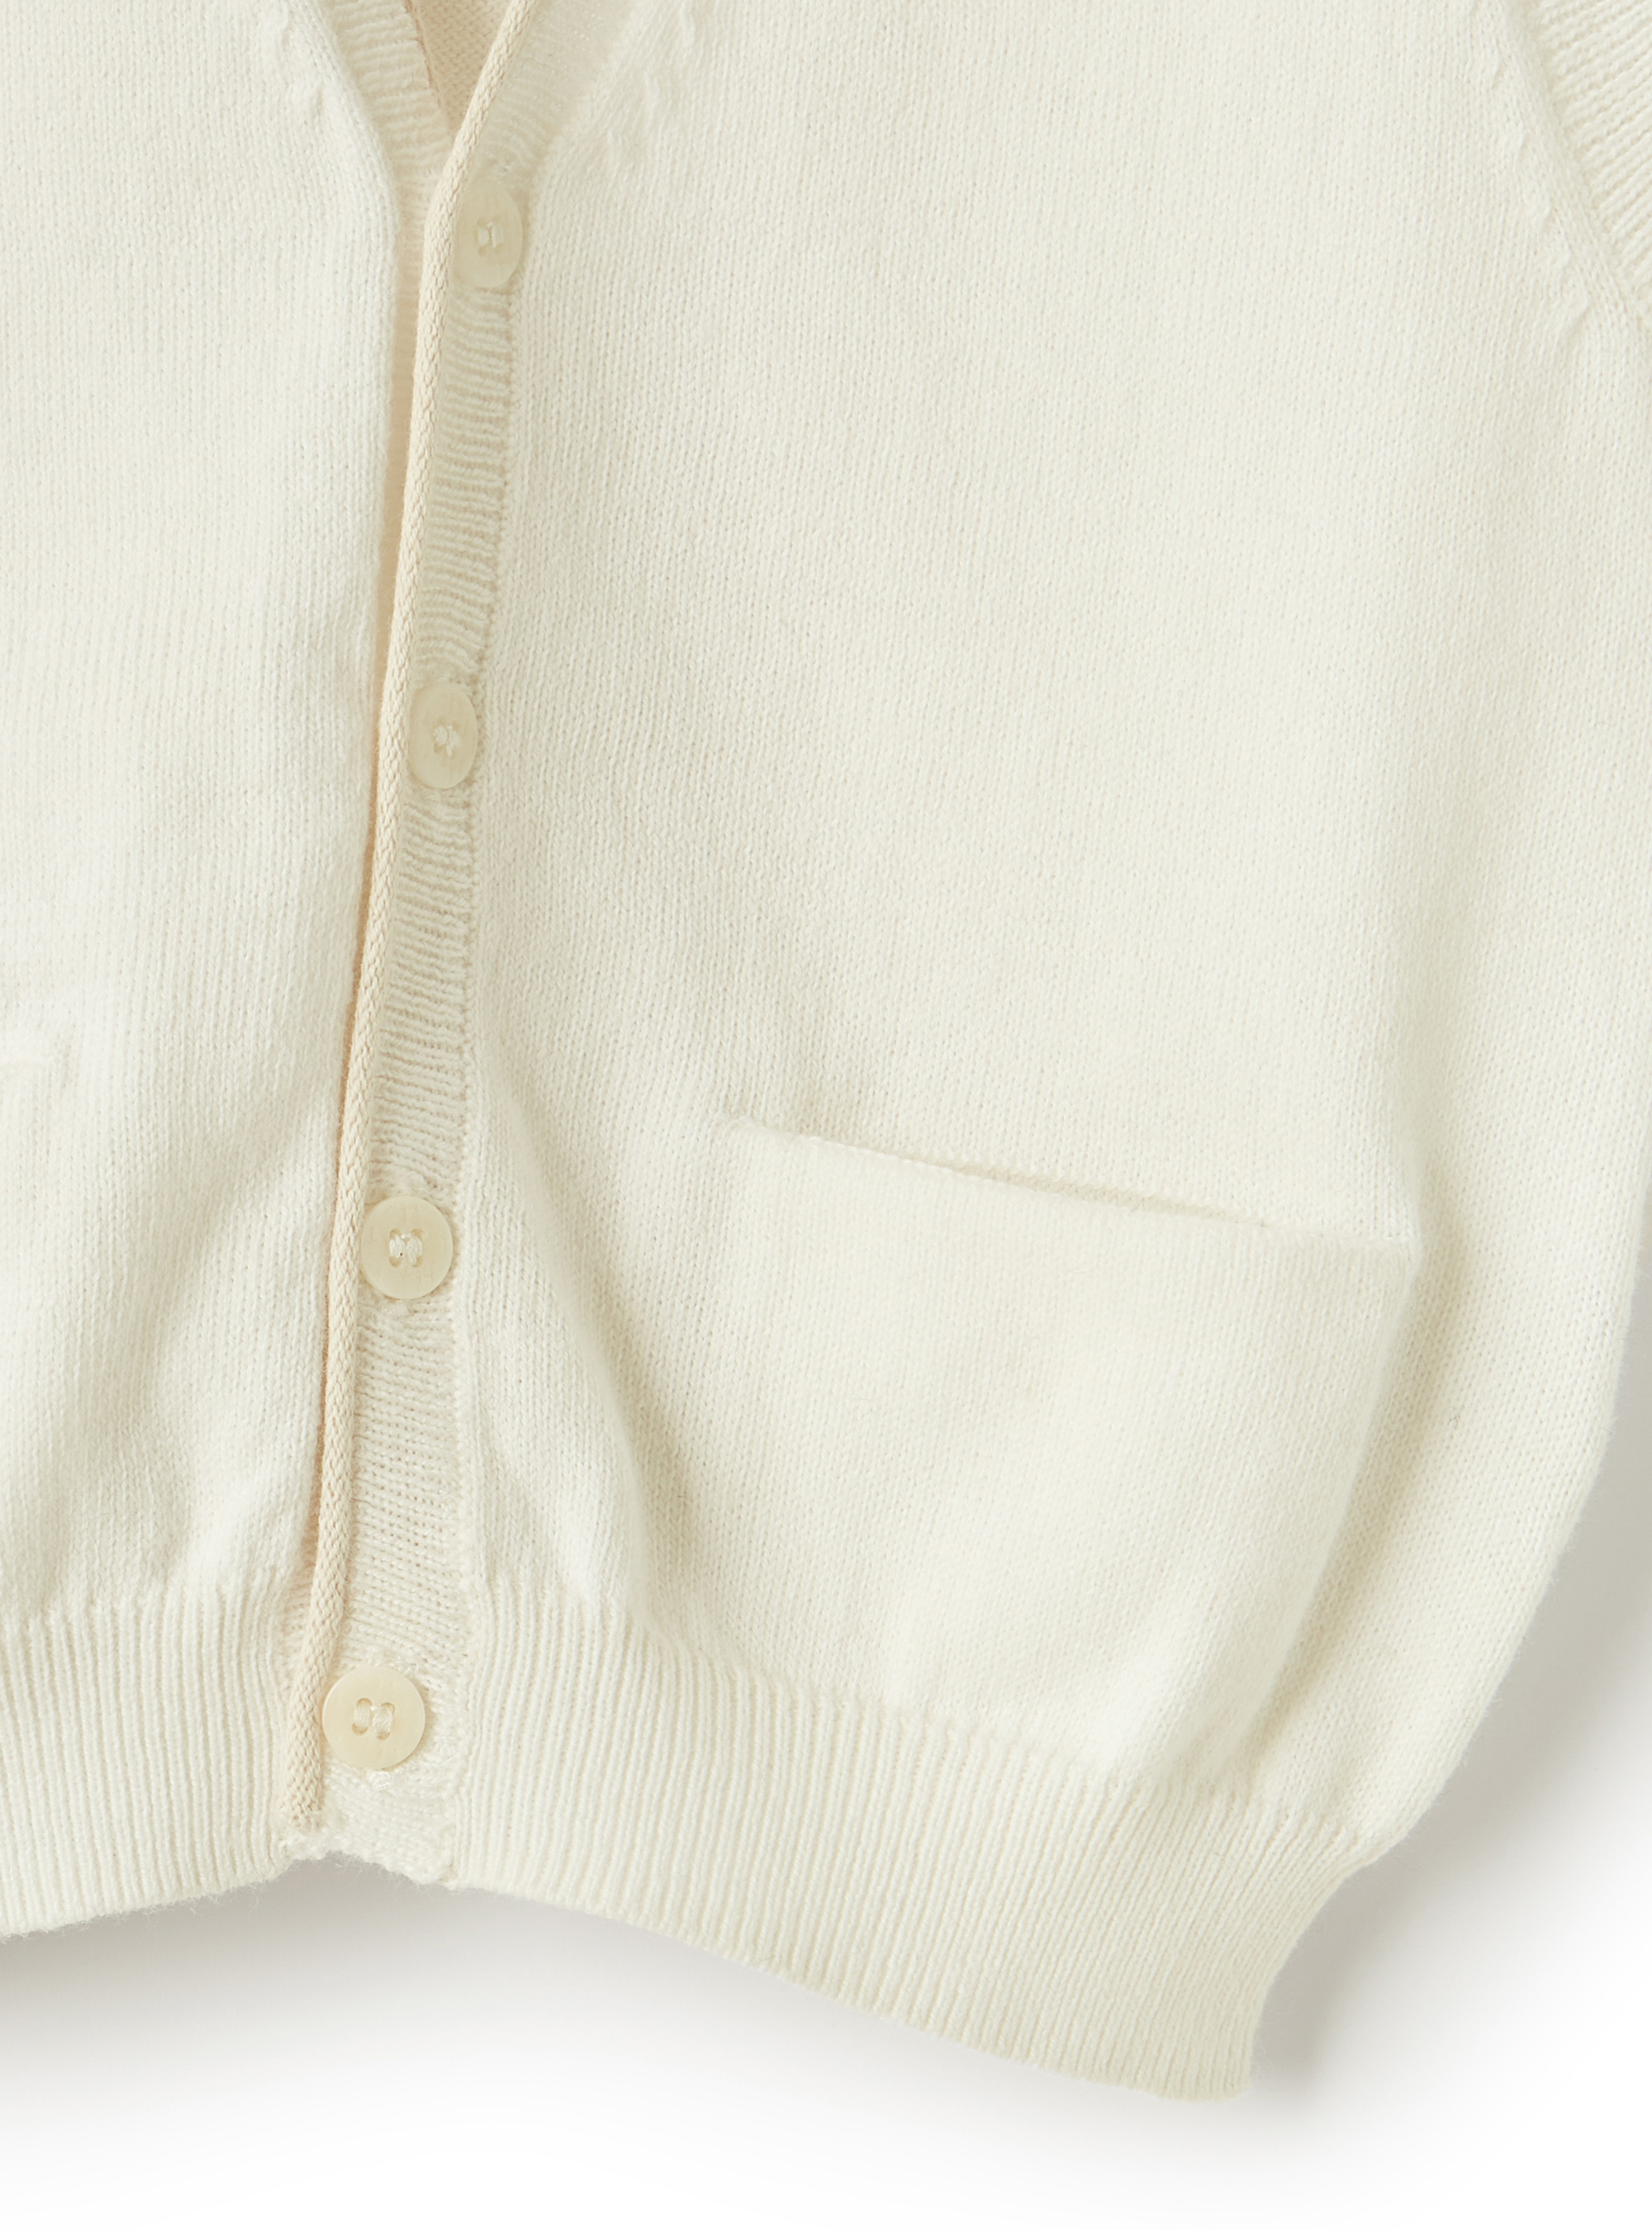 Gilet in maglia con profili a contrasto - Bianco | Il Gufo